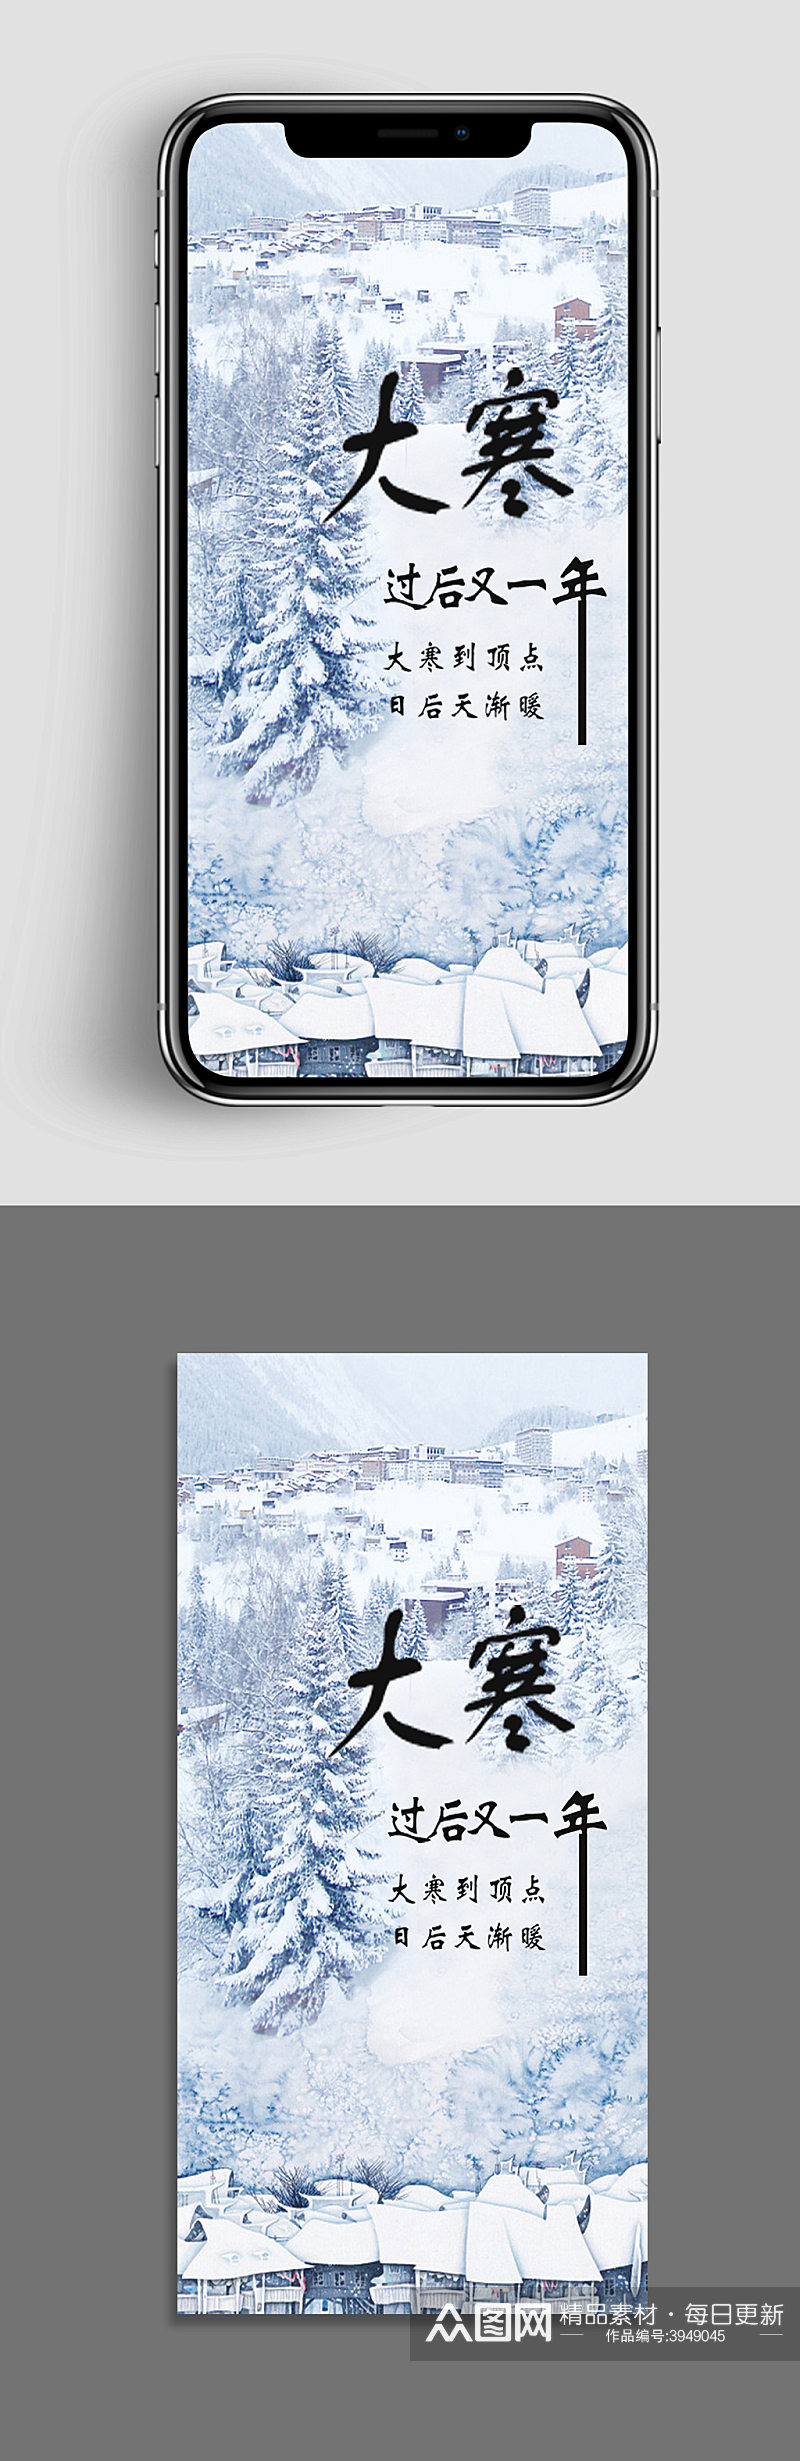 二十四节气之大寒手机app海报素材